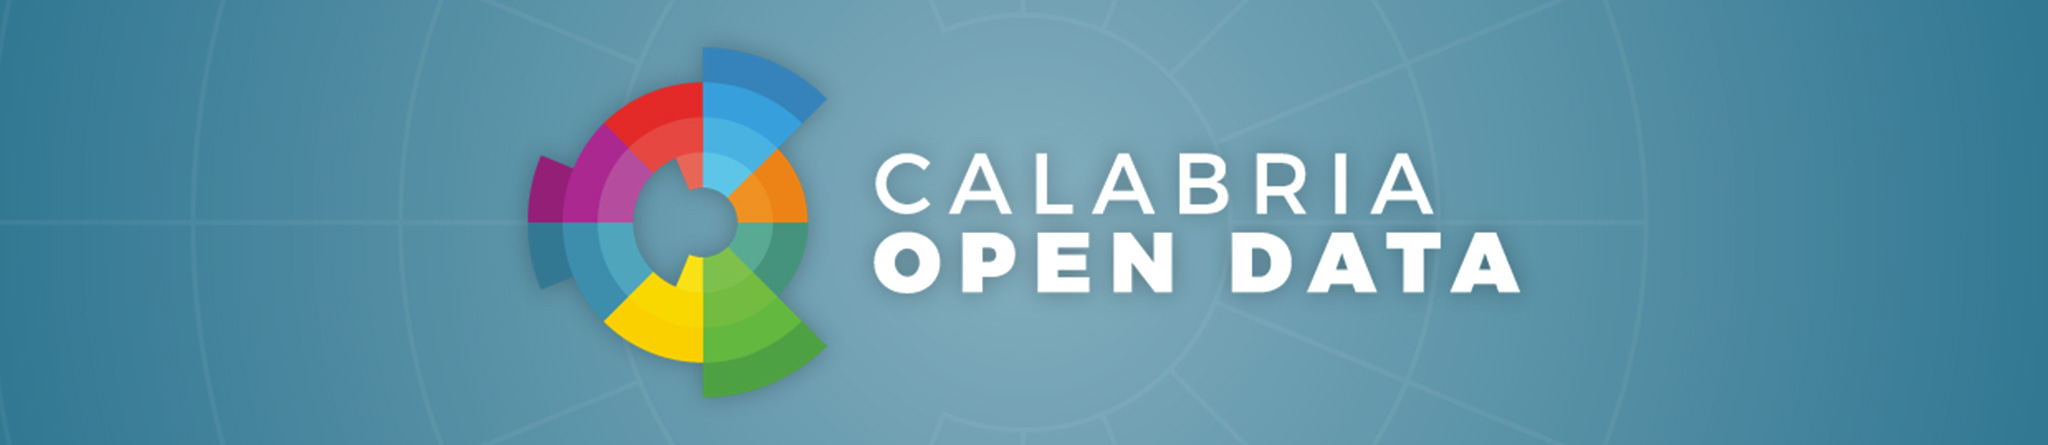 Calabria Open Data - Link al sito